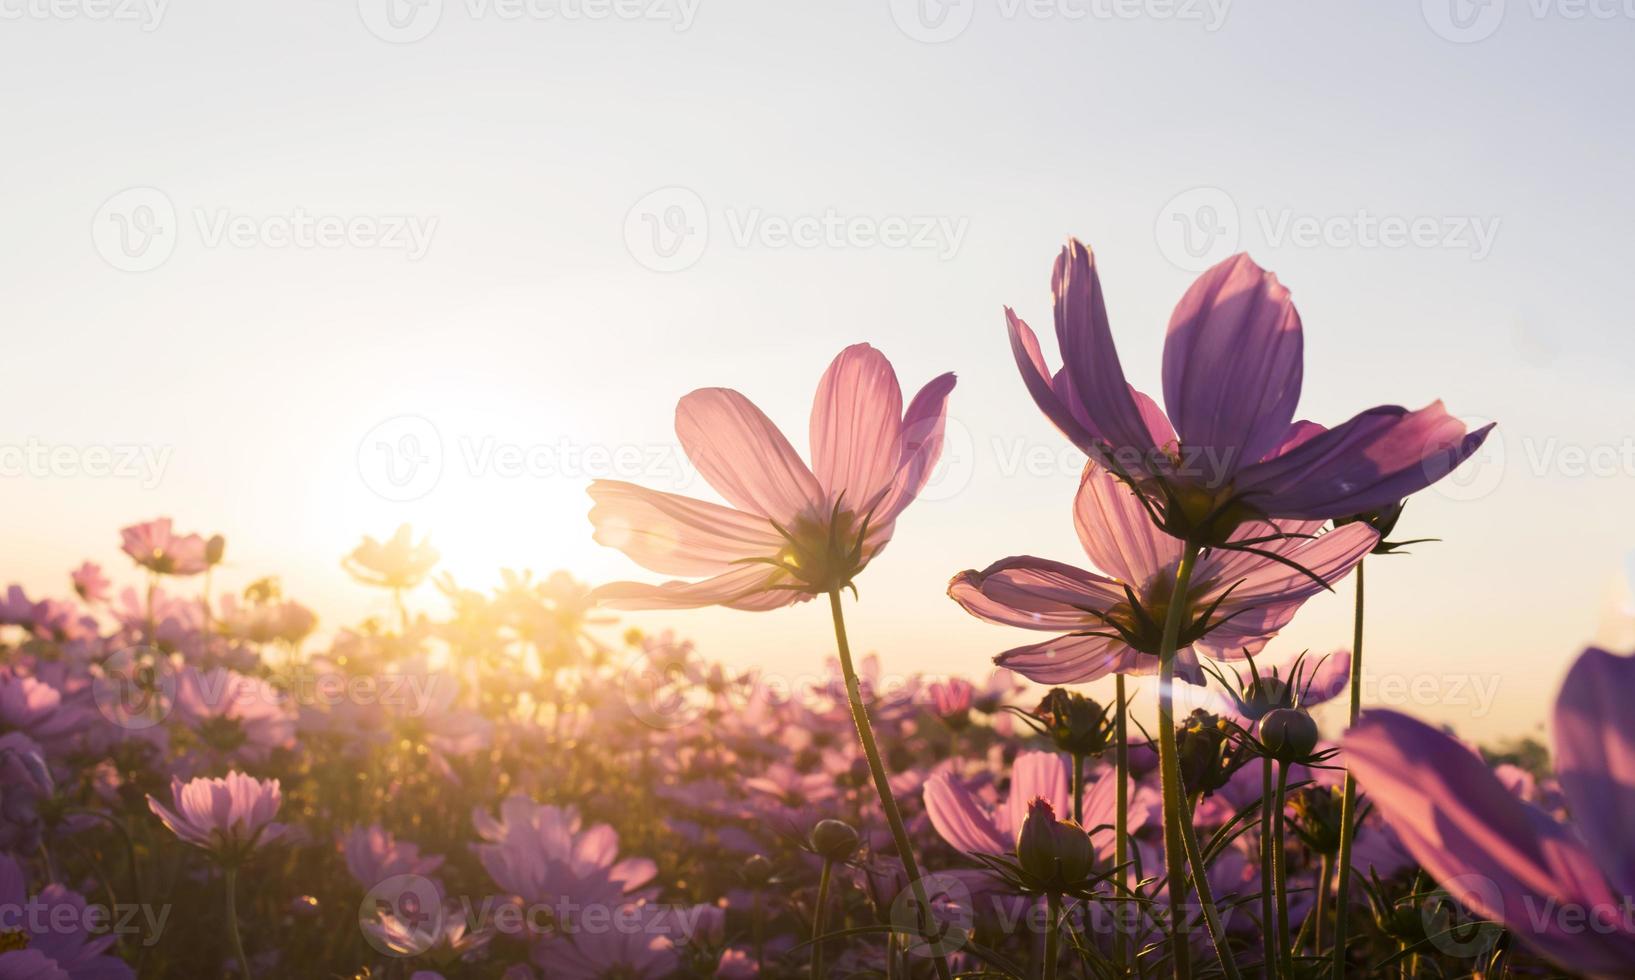 rosa kosmosblommor i trädgården blommar försiktigt under sommarsolnedgången foto